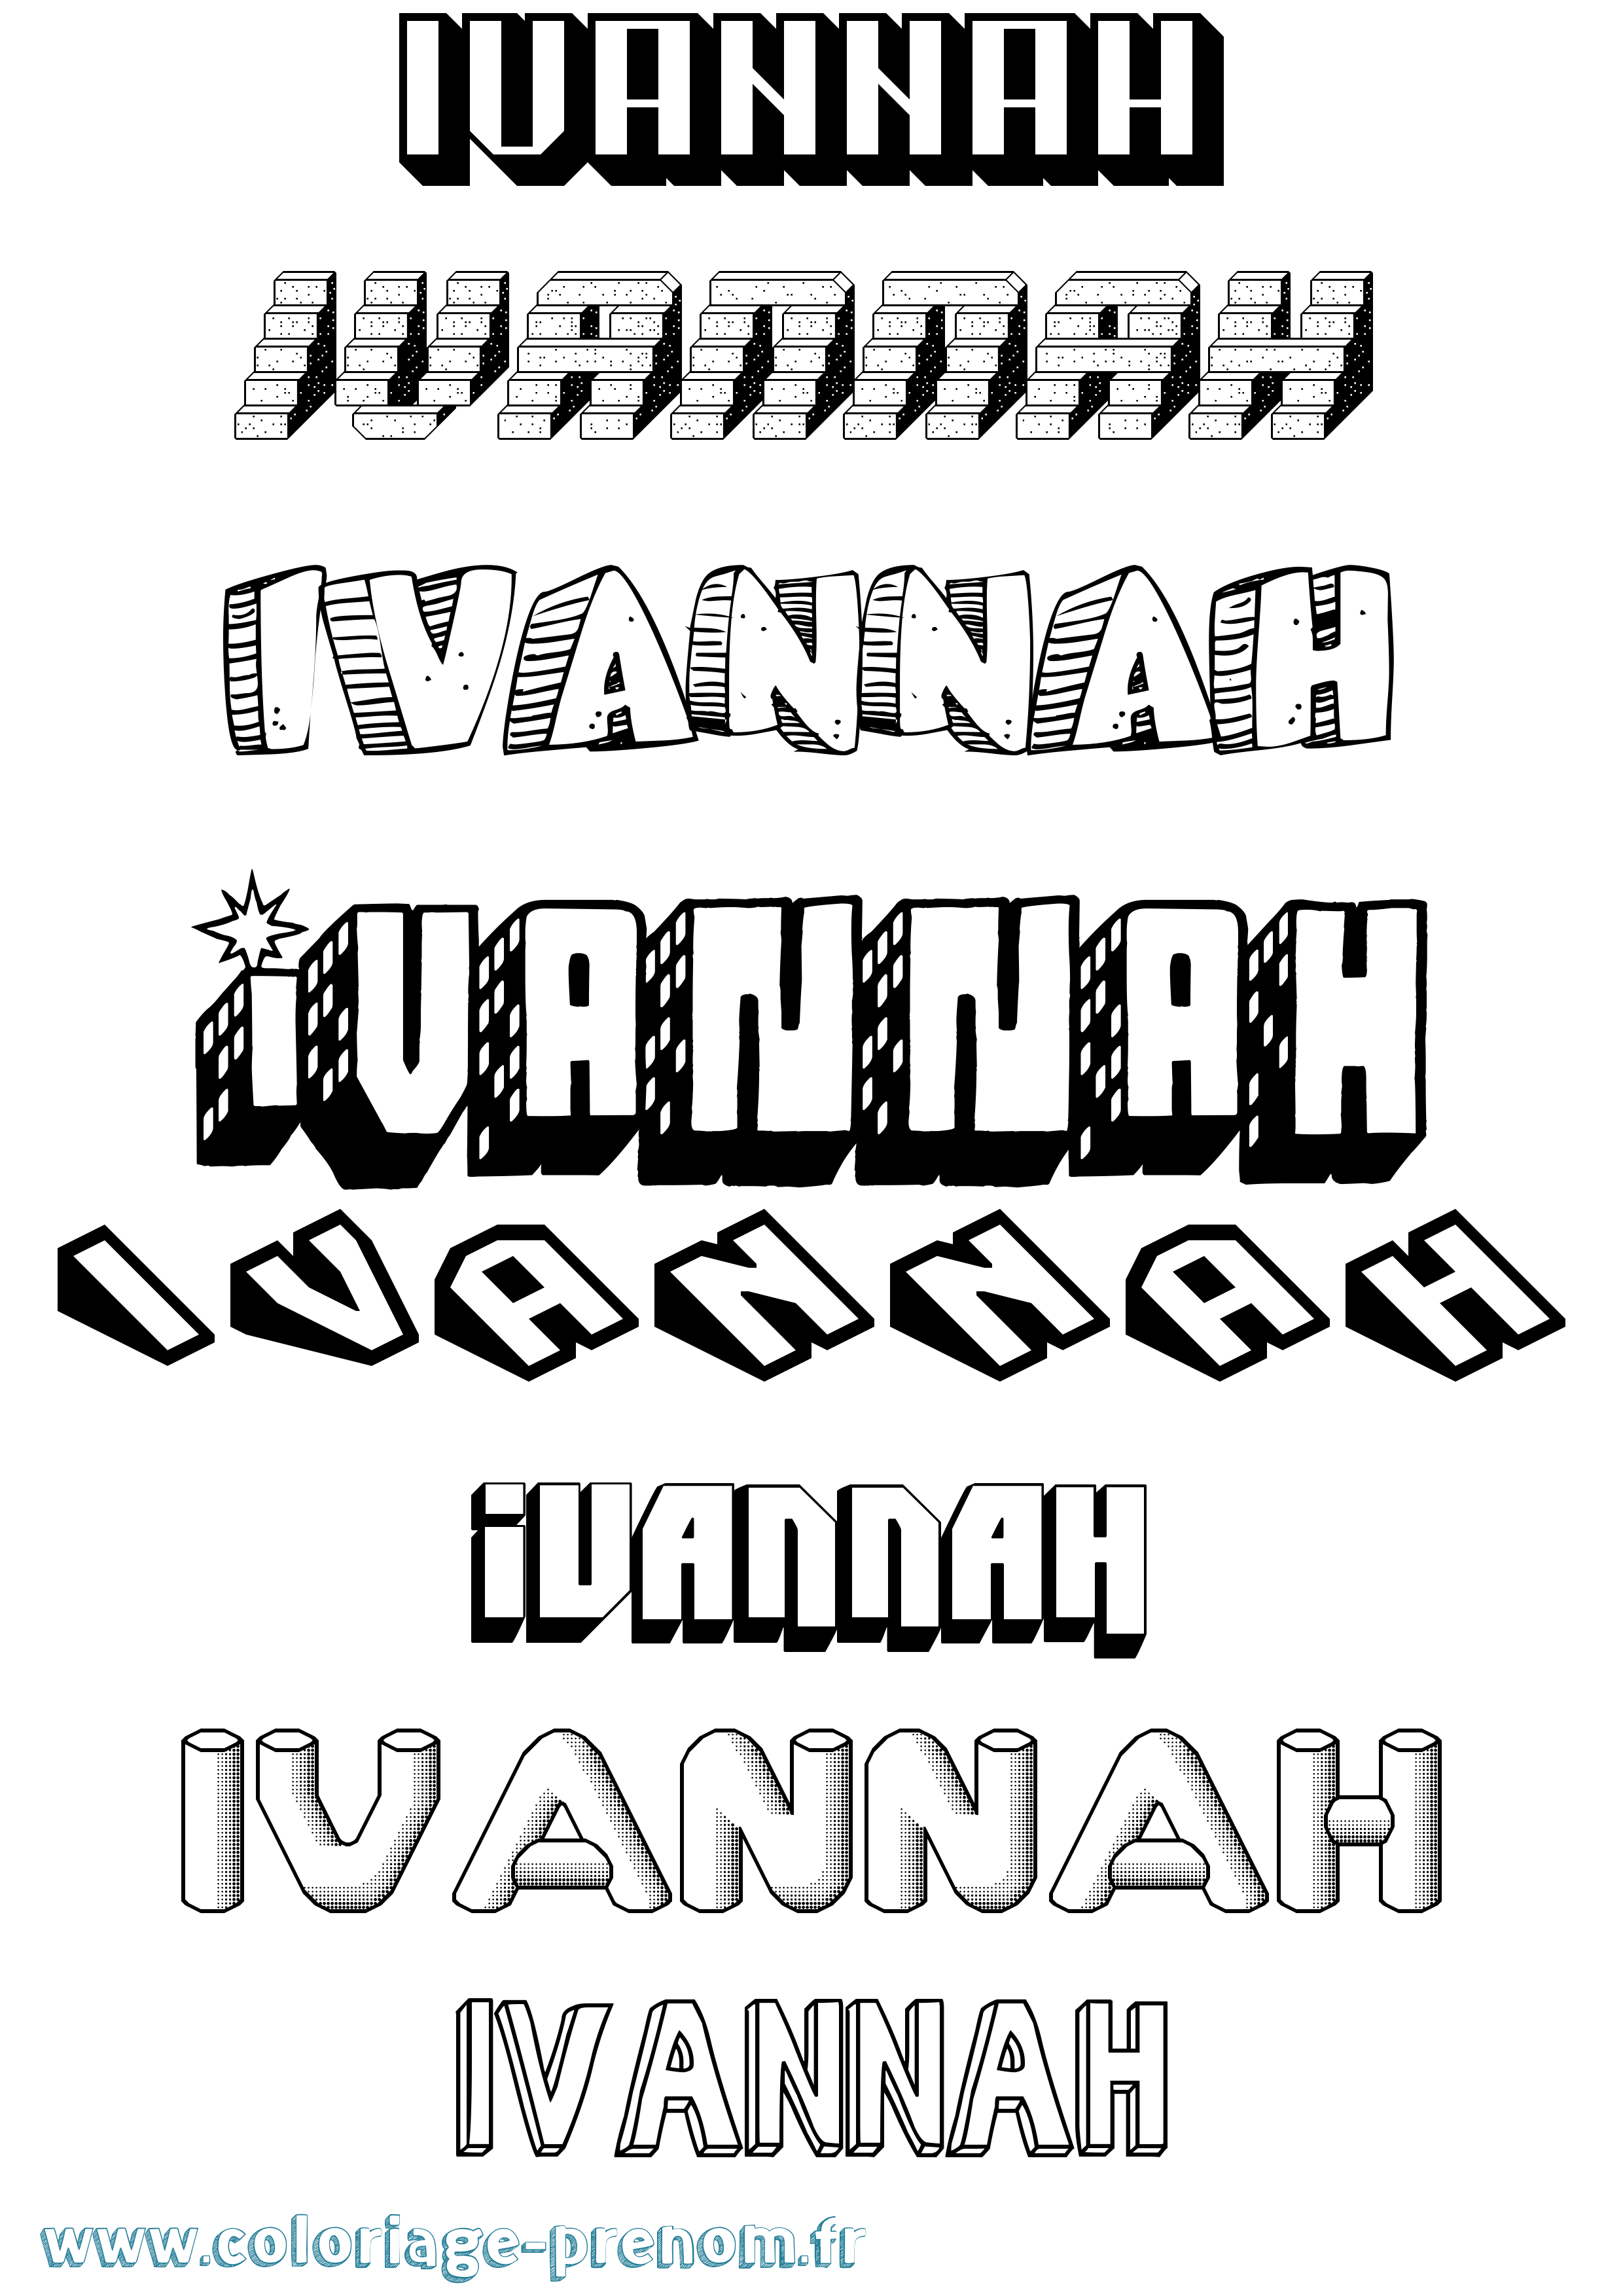 Coloriage prénom Ivannah Effet 3D